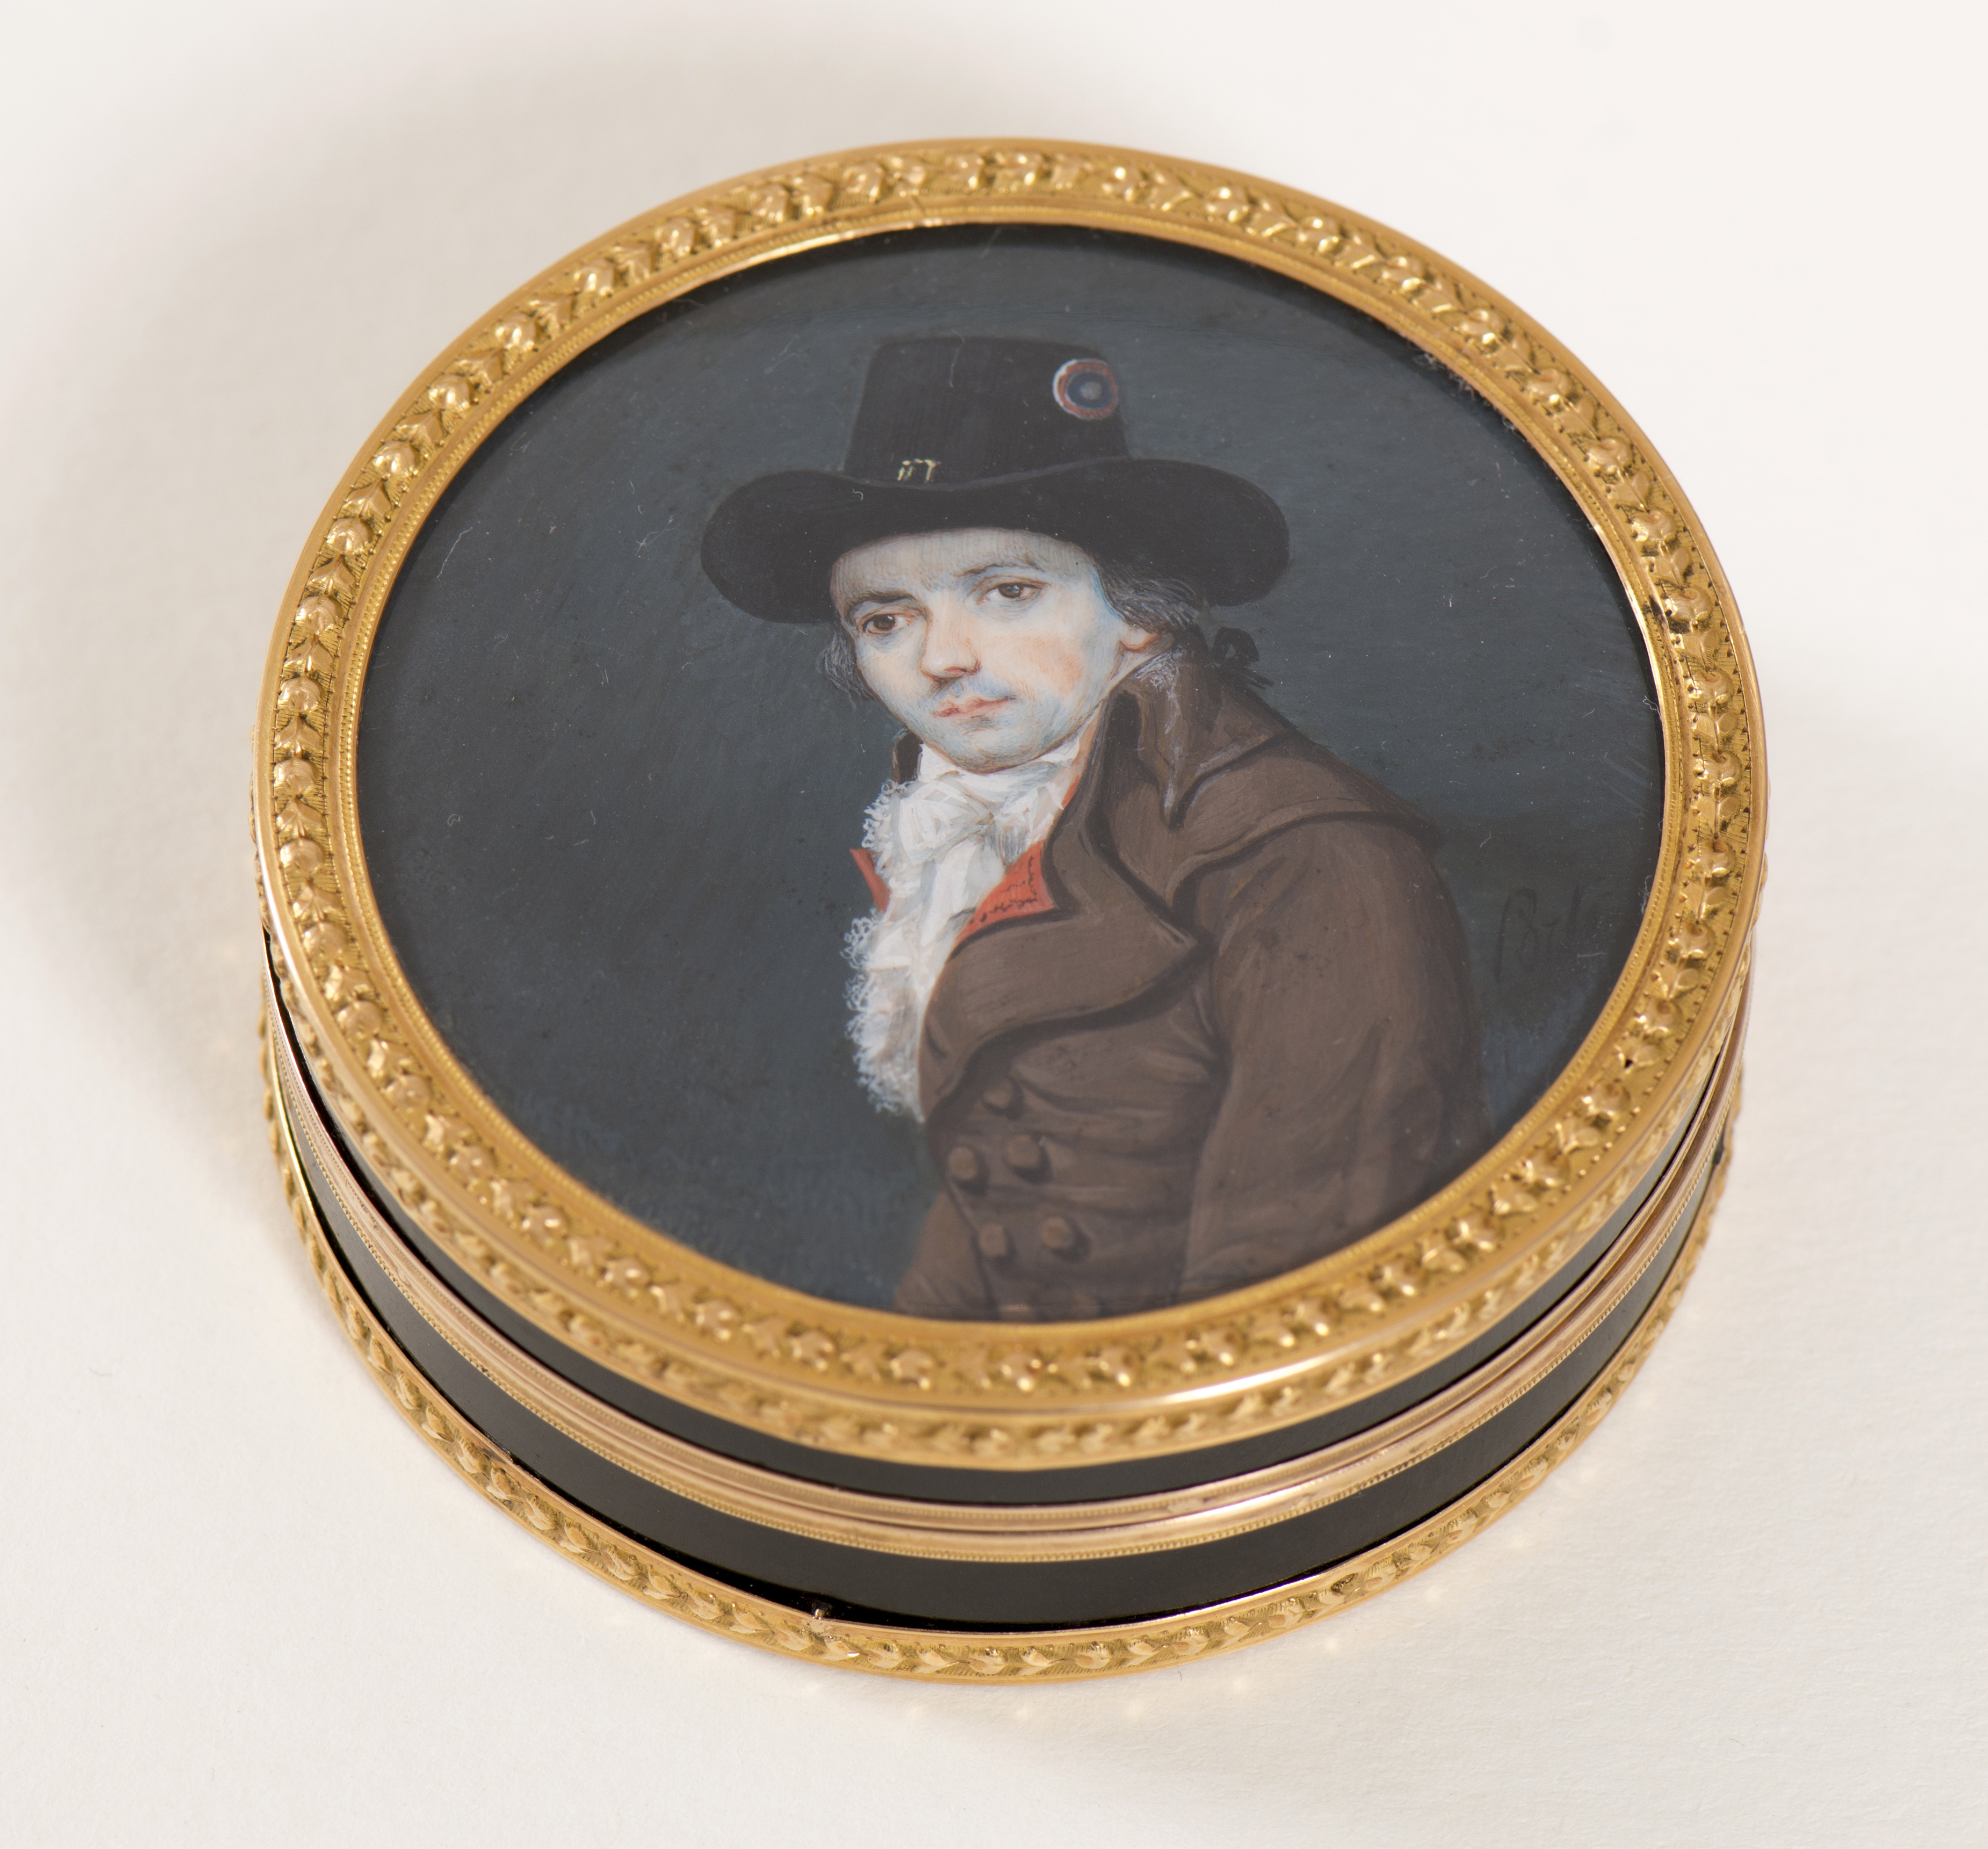 Bonbonnière - Porlier (1793) - Coll. Musée de la Révolution française